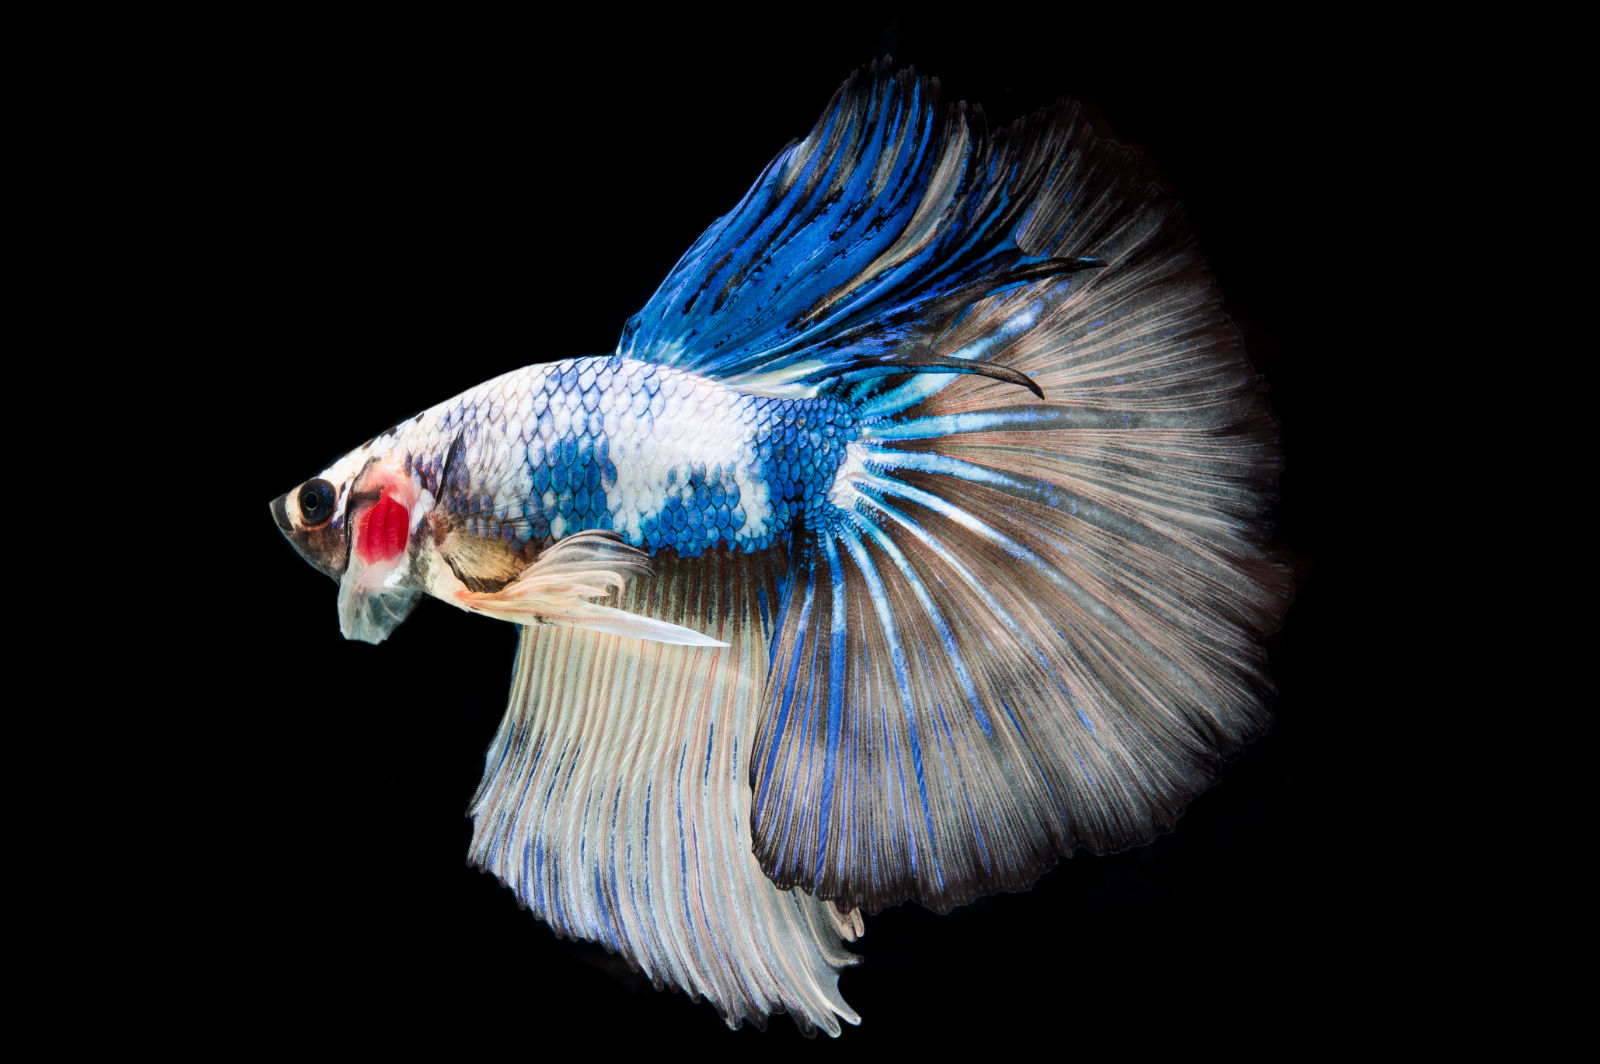 Pesce combattente (Betta splendens) - Blu e Bianco